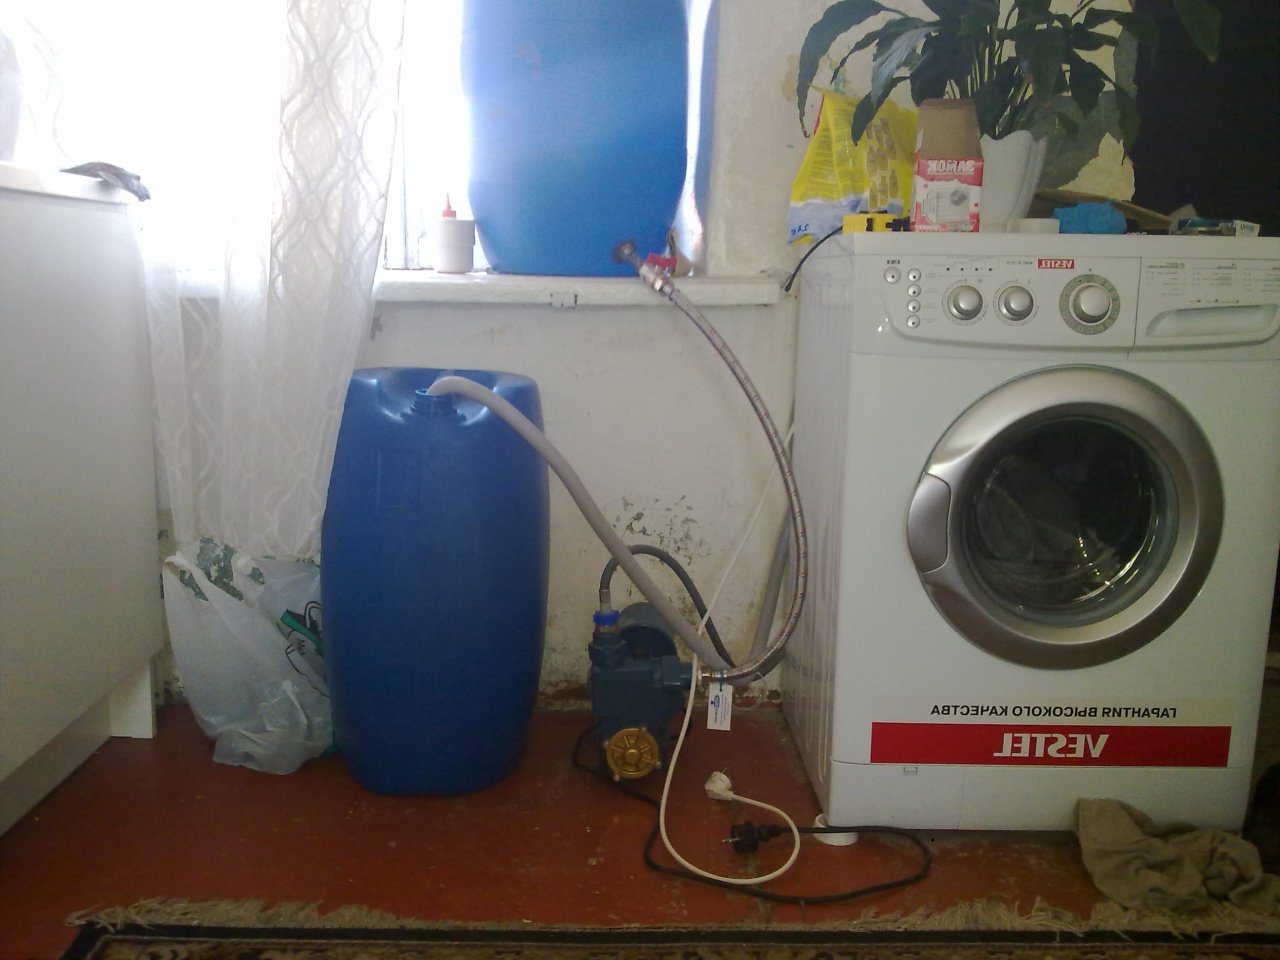 ansluta en tvättmaskin utan rinnande vatten